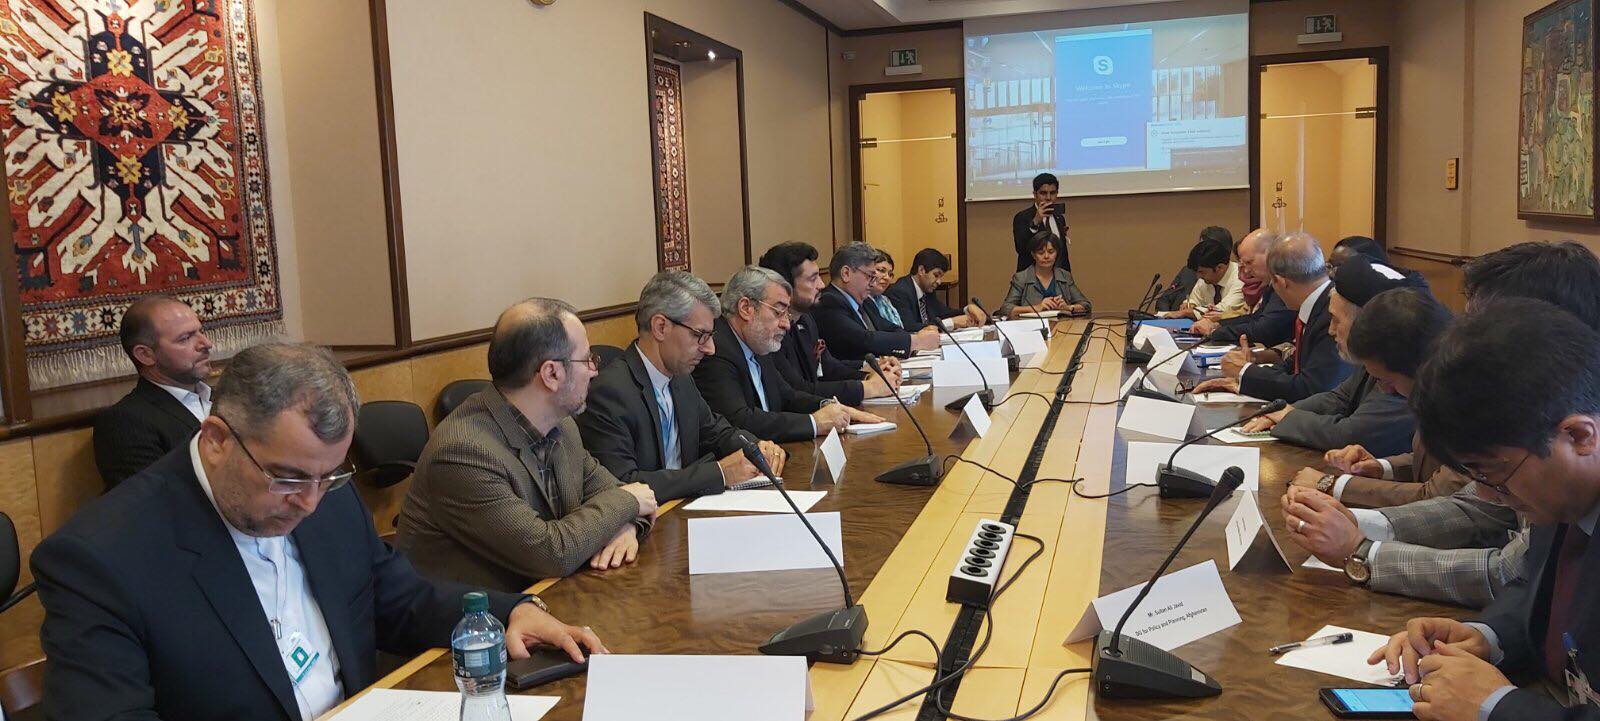 جلسه چهارجانبه کمیته رهبری استراتیژی راه حل ها برای پناهندگان افغان، در سویس برگزار شد